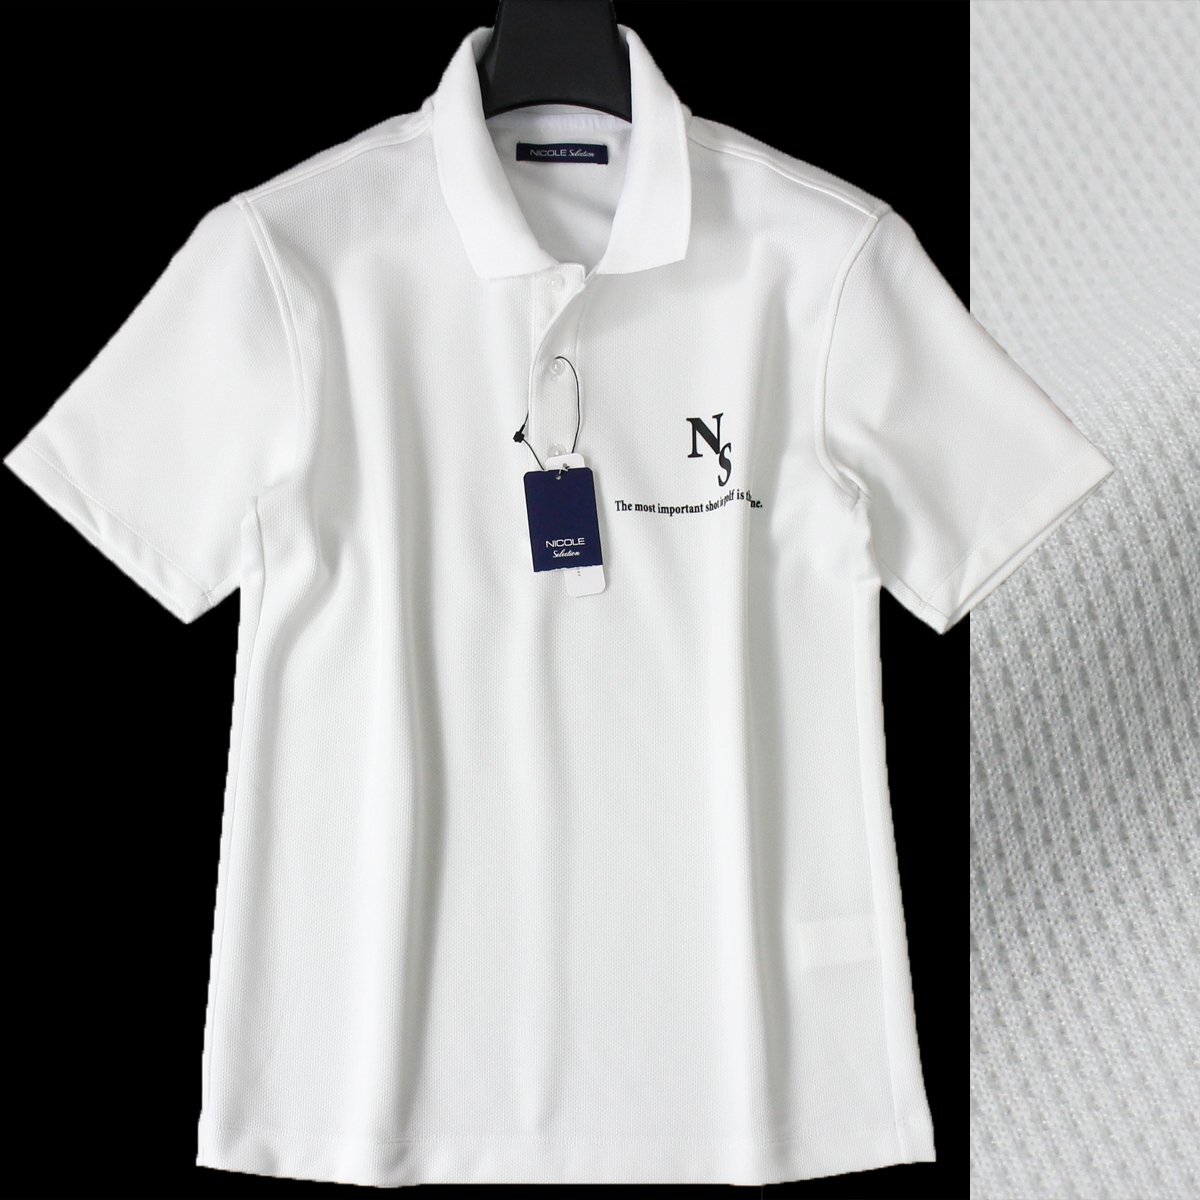 新品 NICOLE GOLF ニコル ゴルフ 中厚 半袖 ポロシャツ 46 (M) 白 吸水速乾 シャツ メンズ ウェア ホワイト 春夏 ◆CC2168Aの画像1